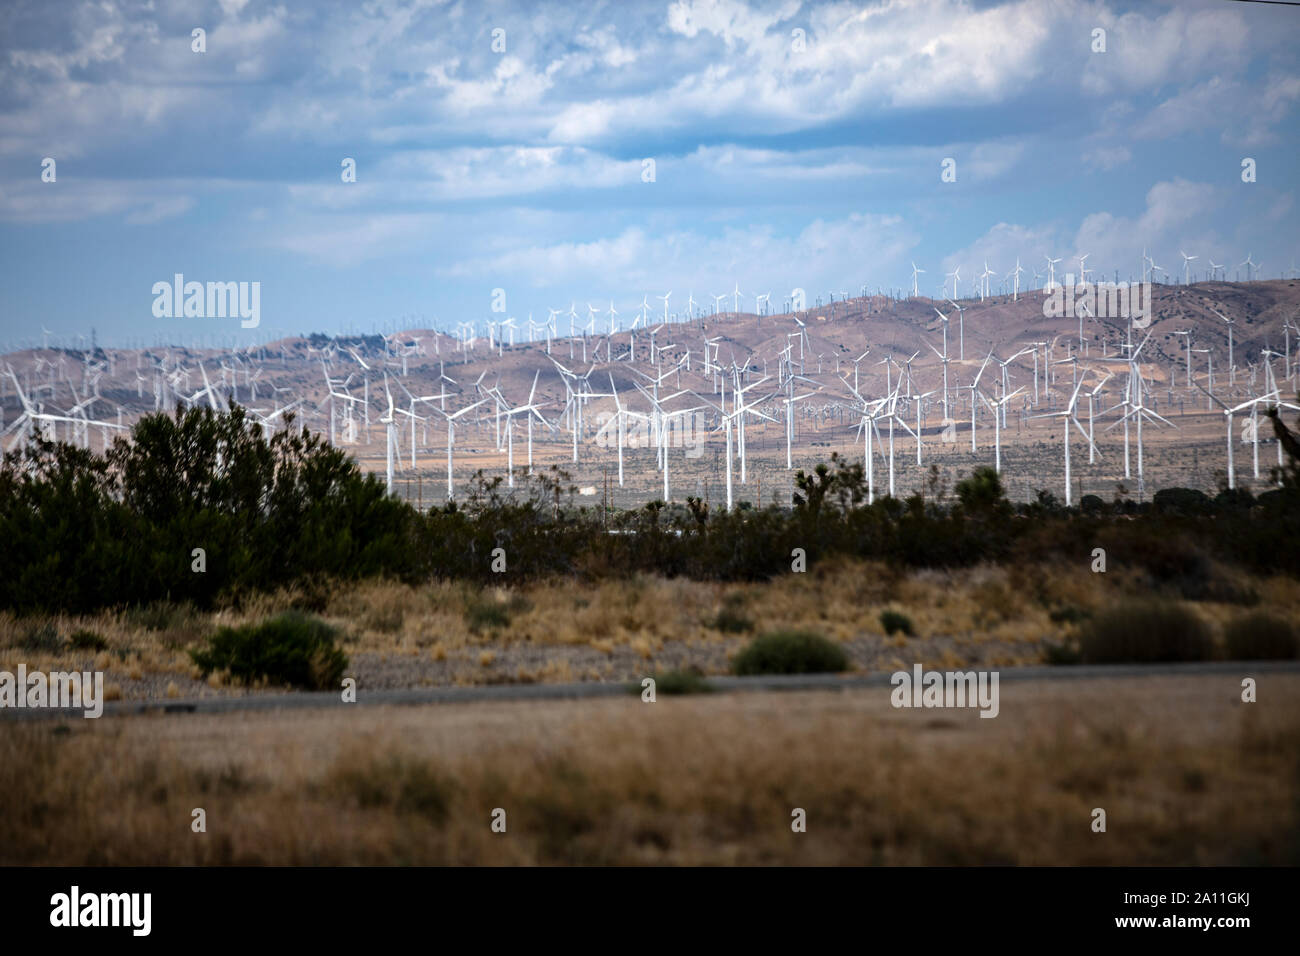 Parque eólico instalado mit Windrädern in der Nähe von Barstow im kalifornischen interior. Tal ist ein ganzes voll mit den Energiegewinnern. Foto de stock